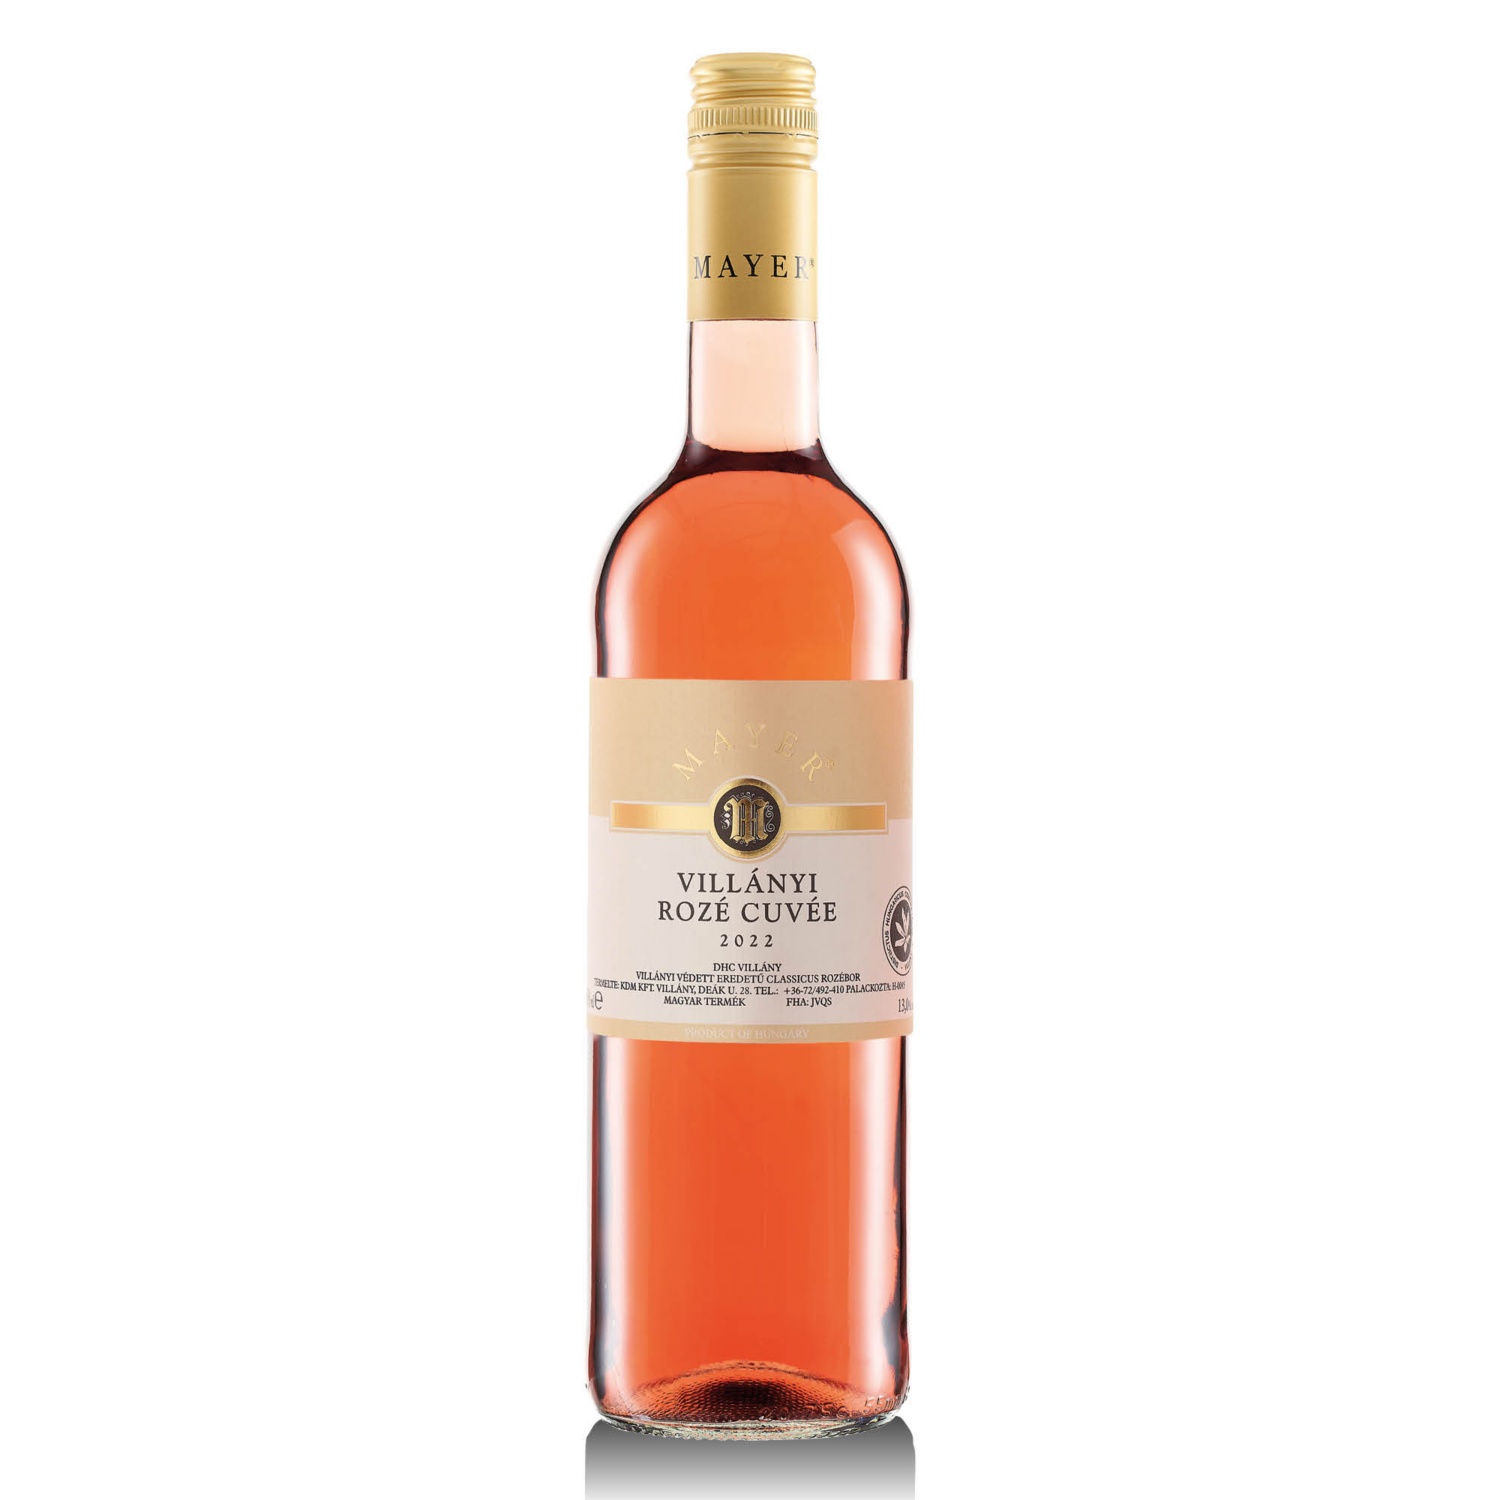 VILLÁNY Mayer rosé, 0,75 l